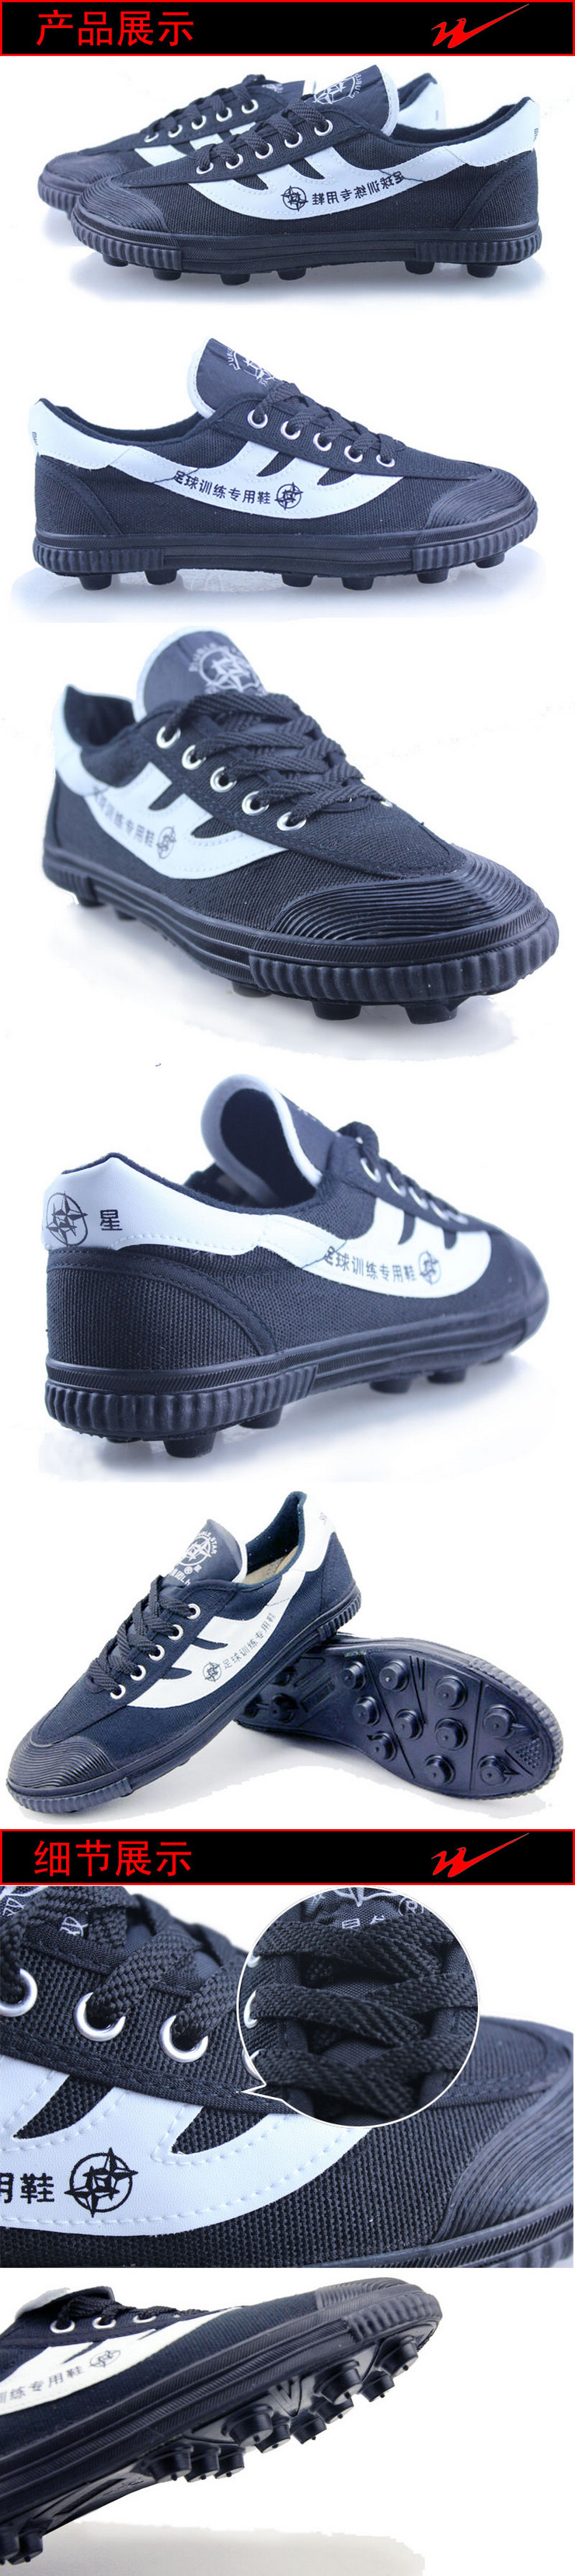 Chaussures de football DOUBLE STAR en toile - Fonction de pliage facile - Ref 2442304 Image 114